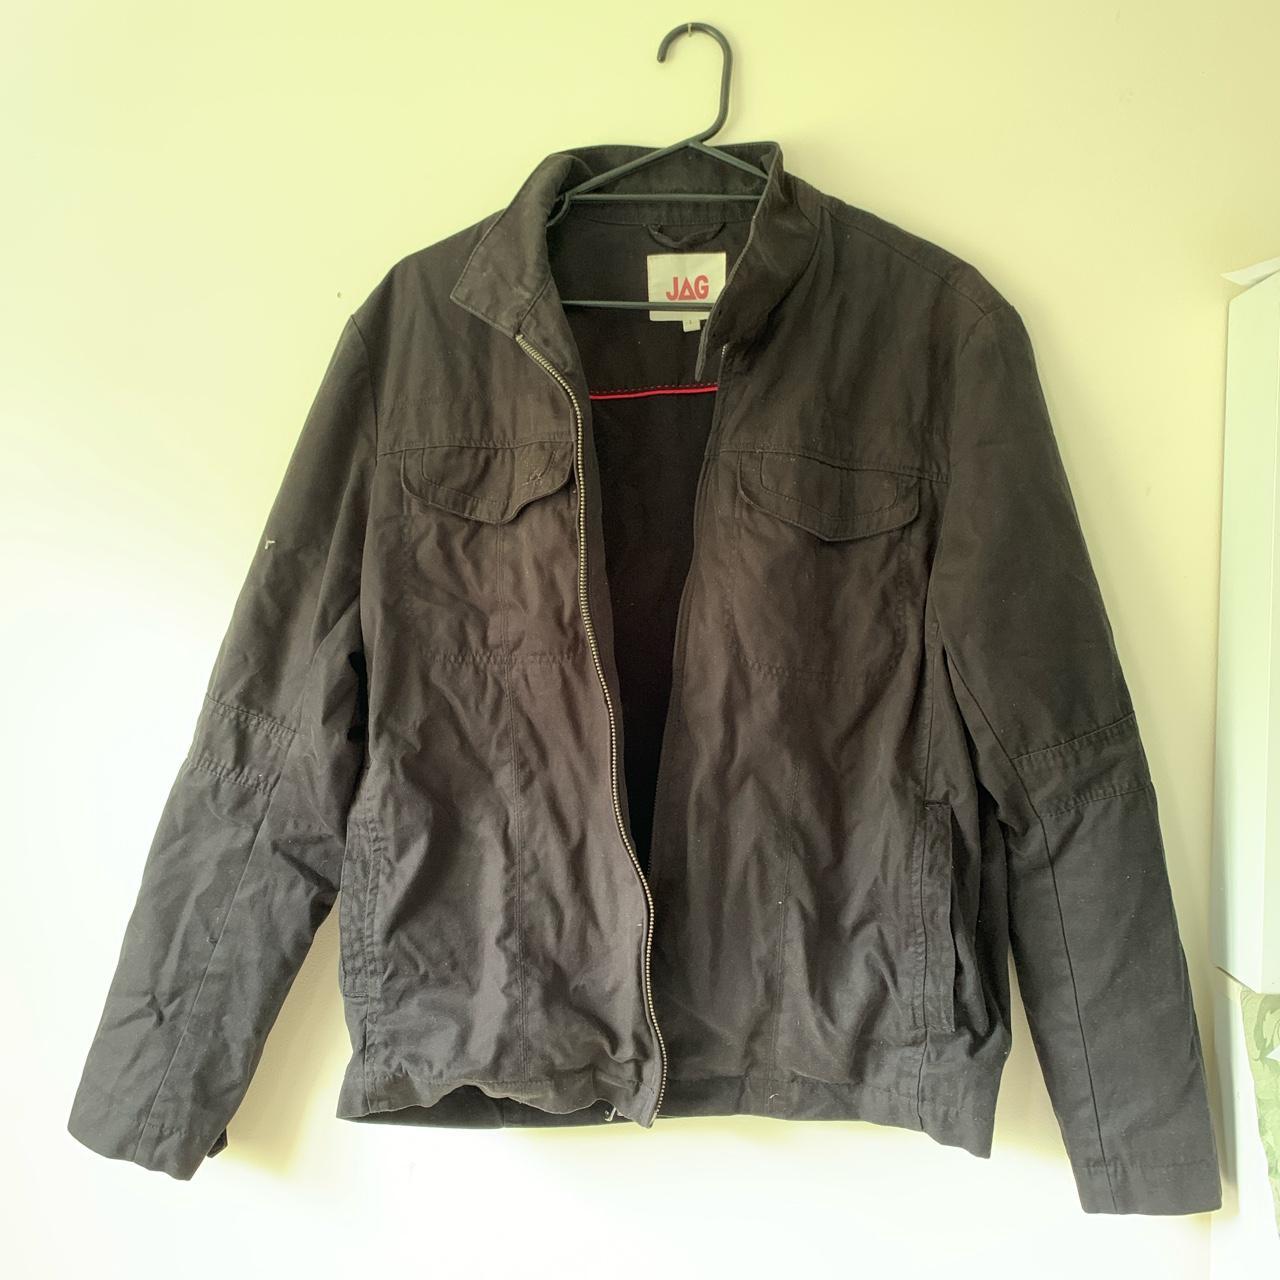 Designer jag black jacket Size: L Condition: new - Depop